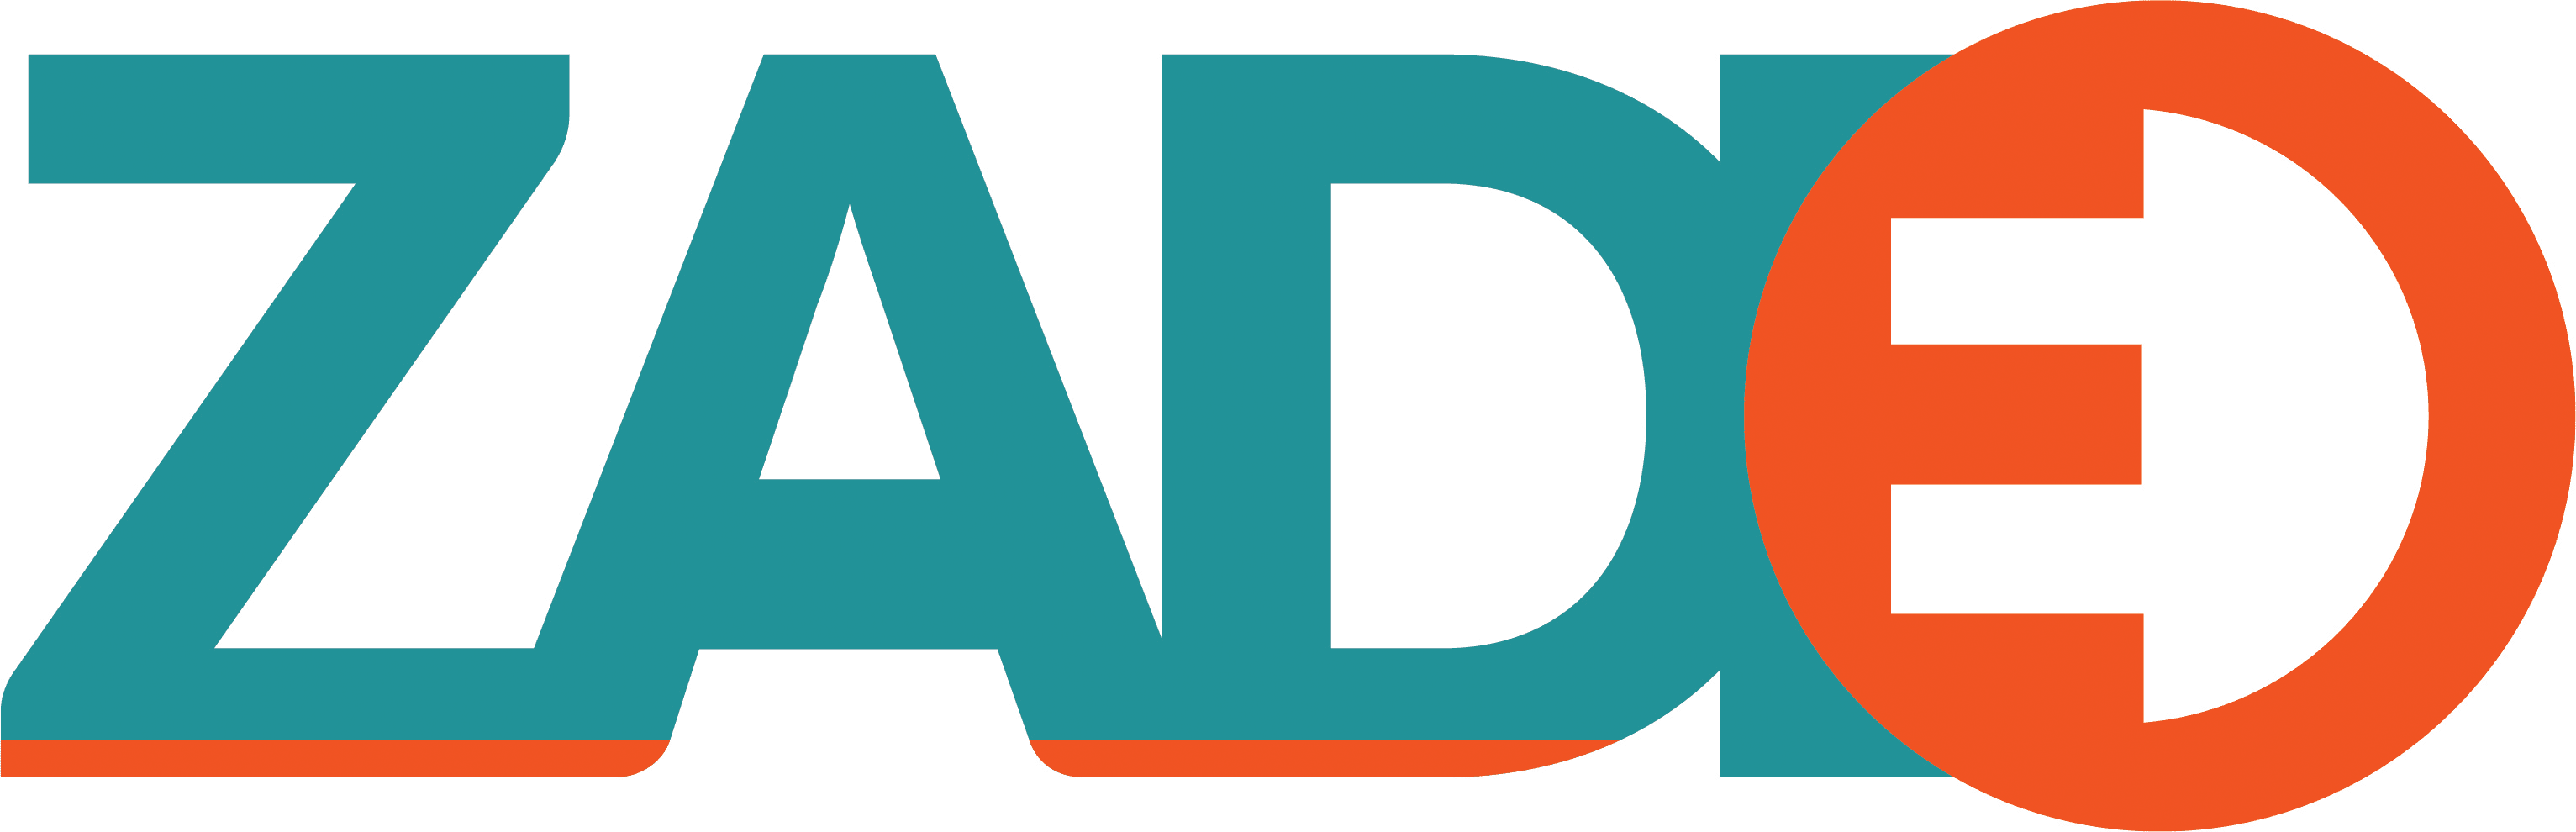 Zadeo AB Logo